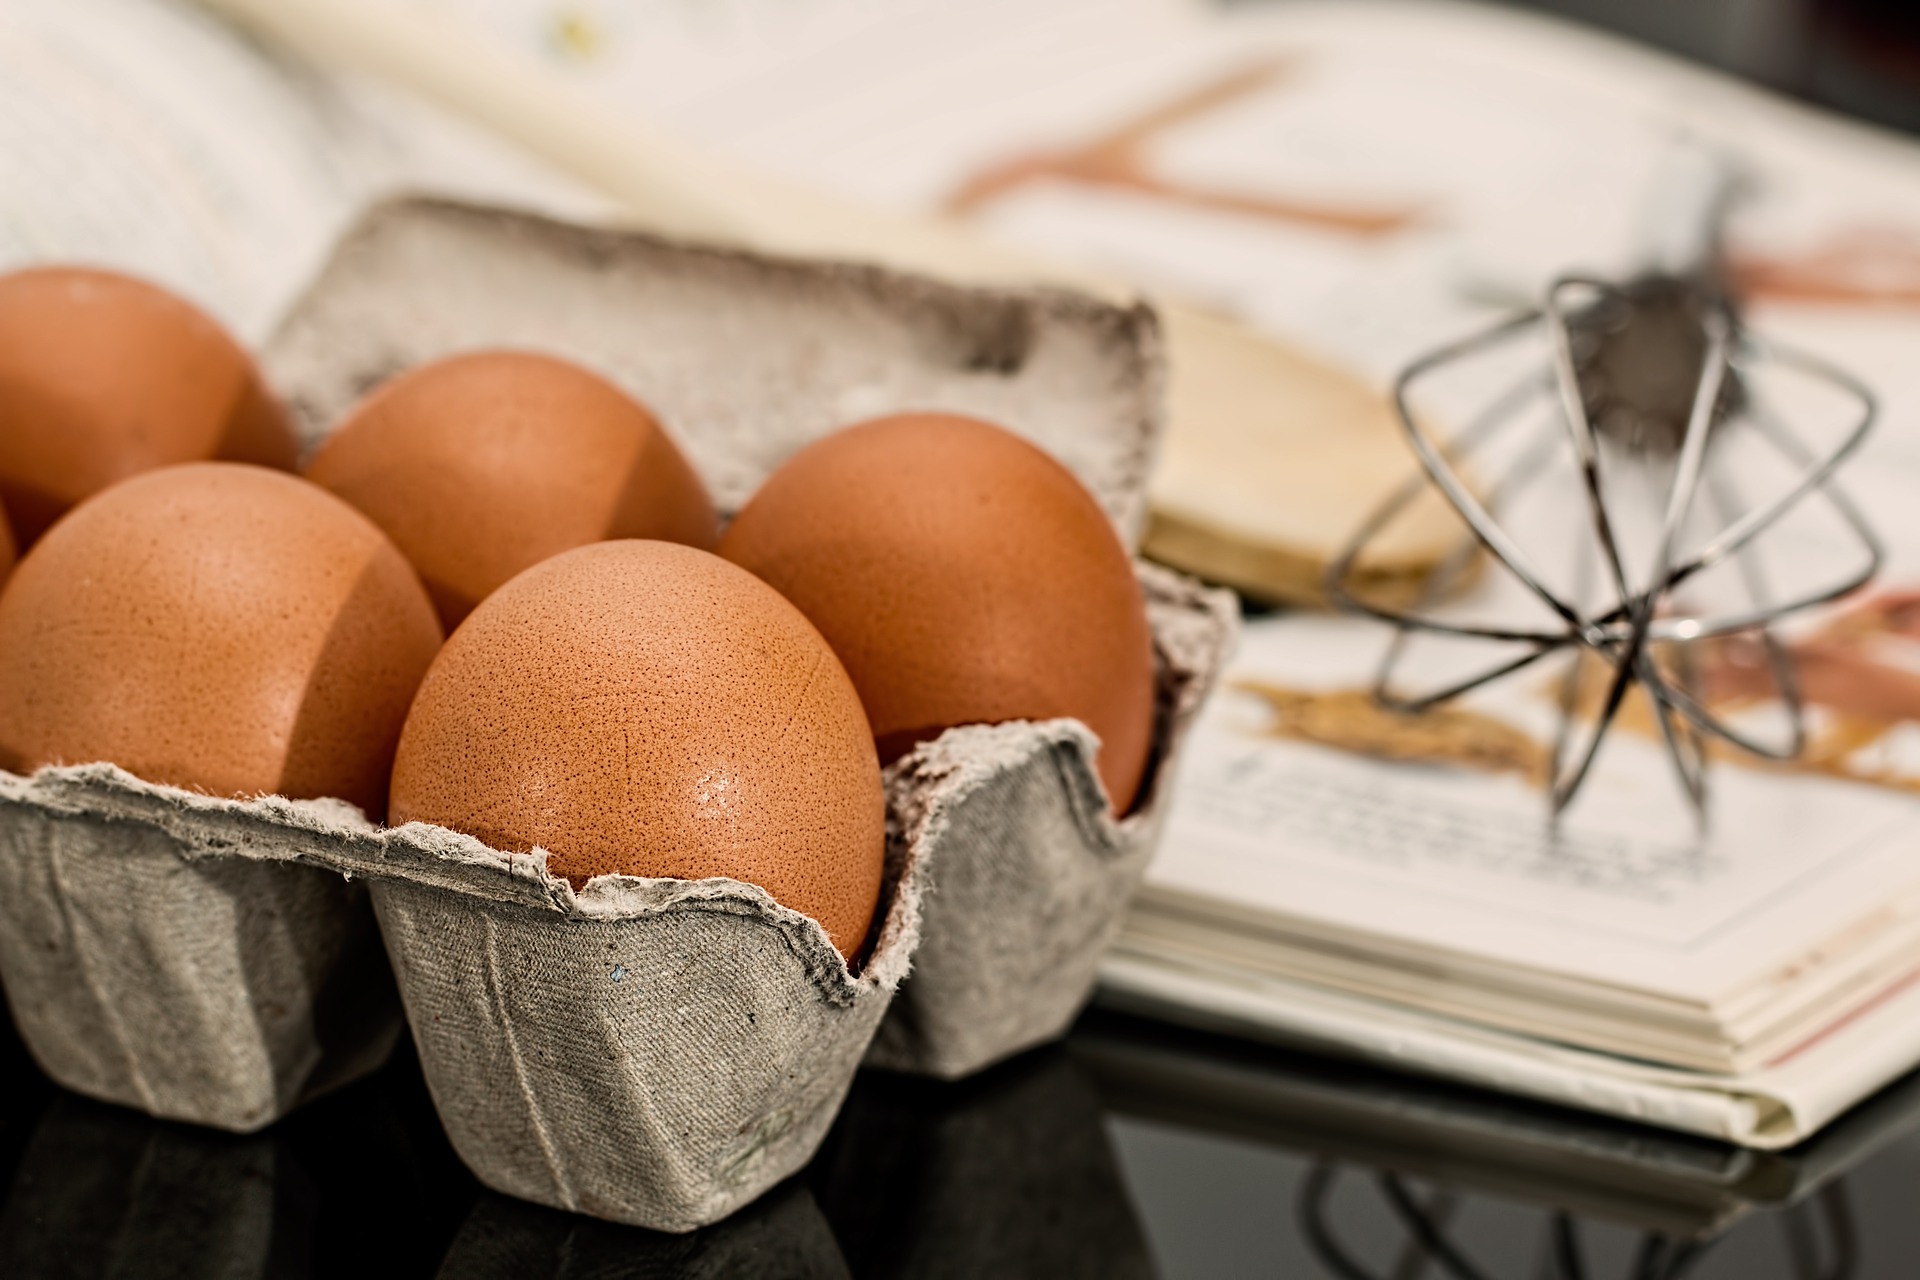 農委會有訂定散裝雞蛋溯源標示制度，蛋箱上會黏貼雞蛋溯源標籤貼紙、二維條碼（QR code）、畜牧場個別溯源碼及保鮮日期，可供消費者透過手機掃描查詢相關資訊及方便農委會進行抽驗。（圖片來源：Pixabay 作者：stevepb）